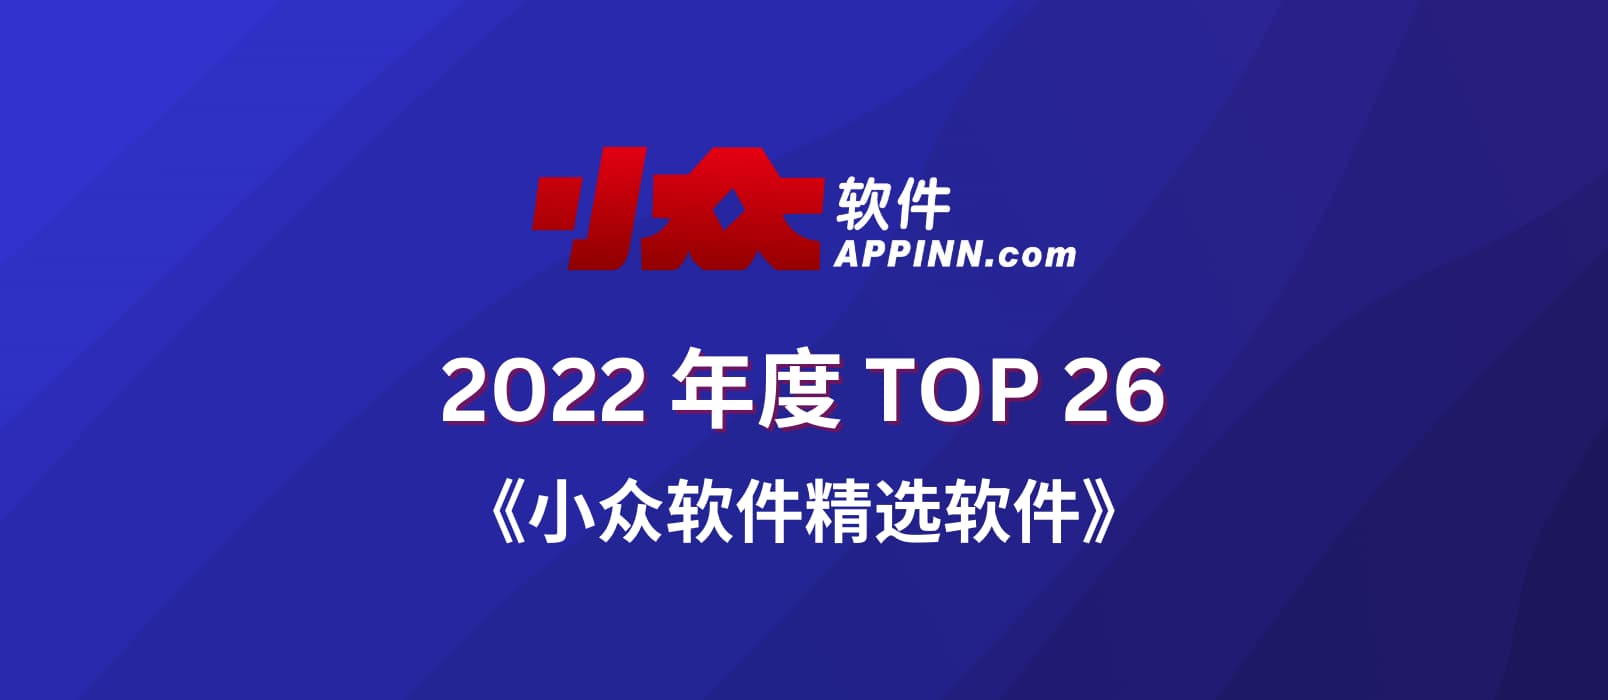 2022 小众软件精选软件 TOP 26